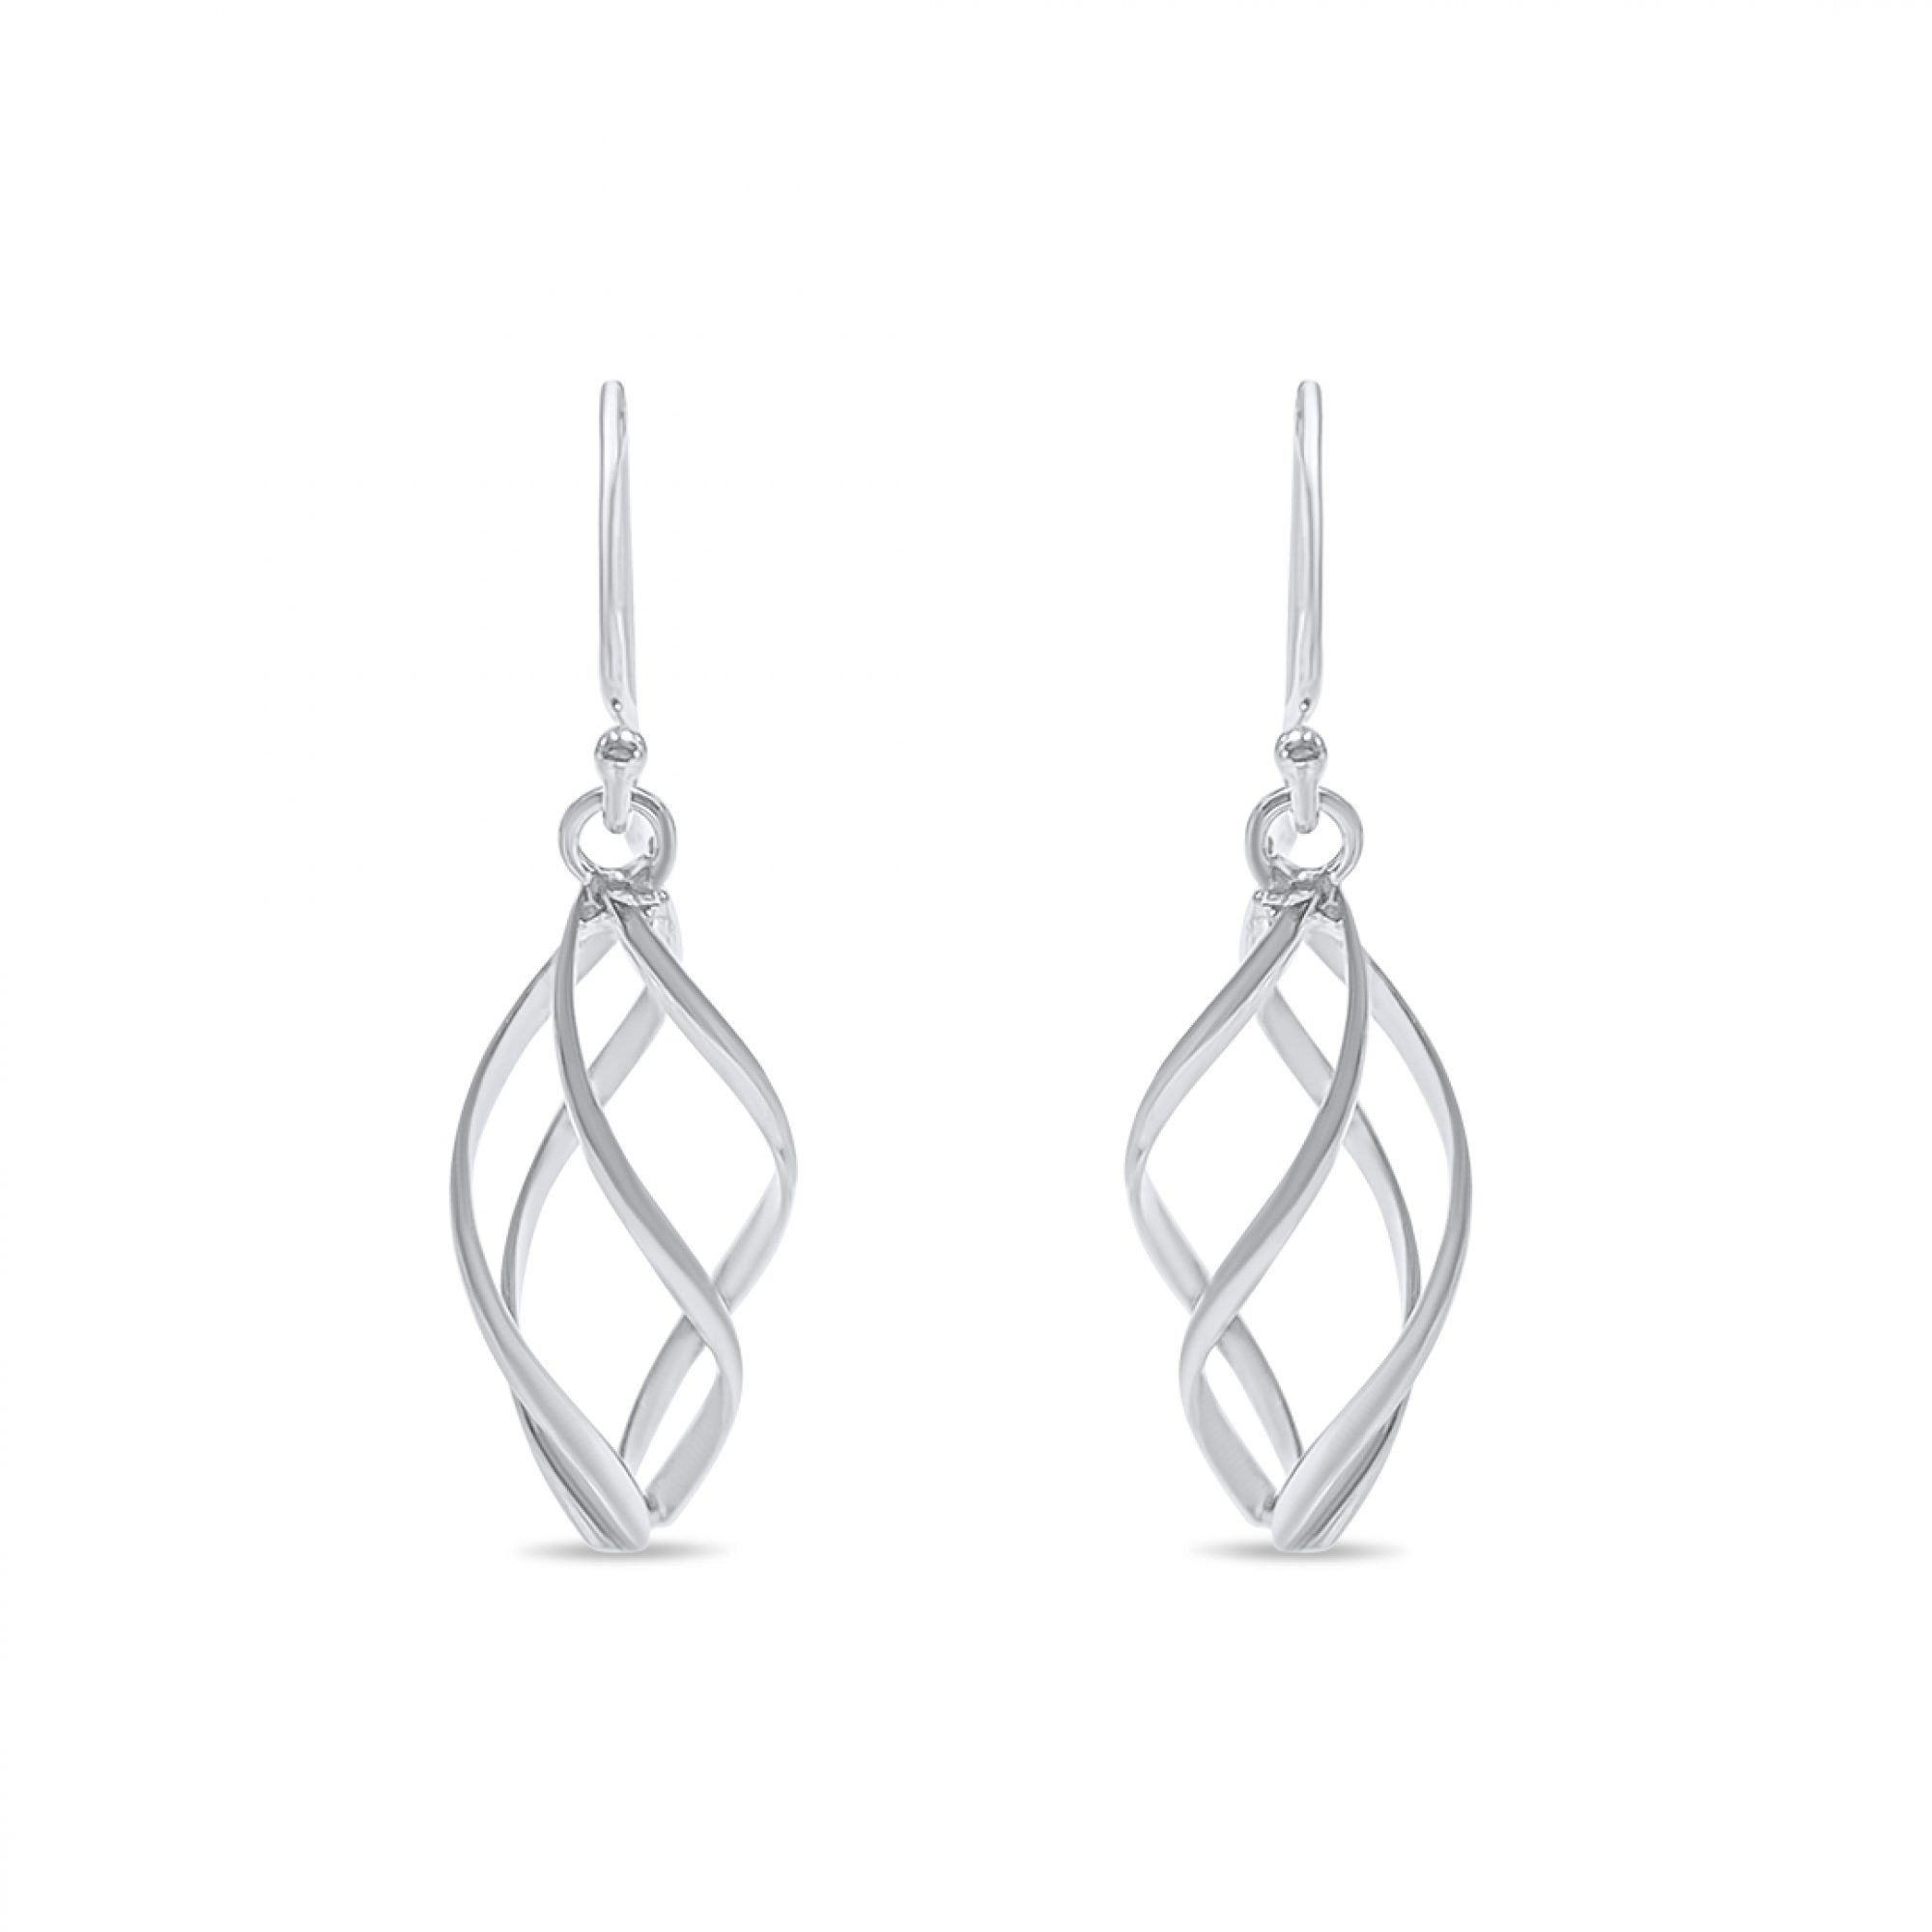 Silver dangle earrings